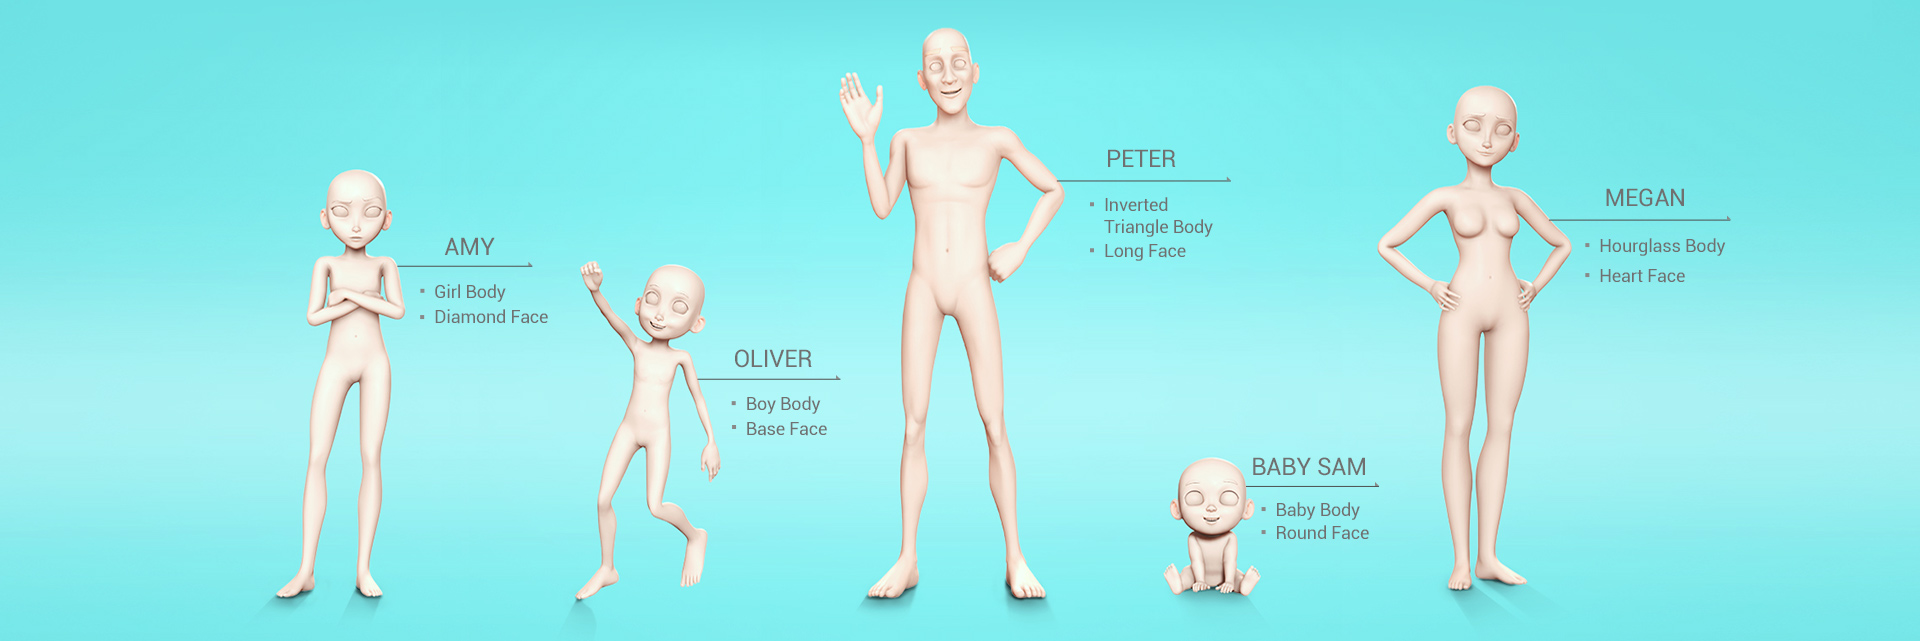 cartoon character -body shapes